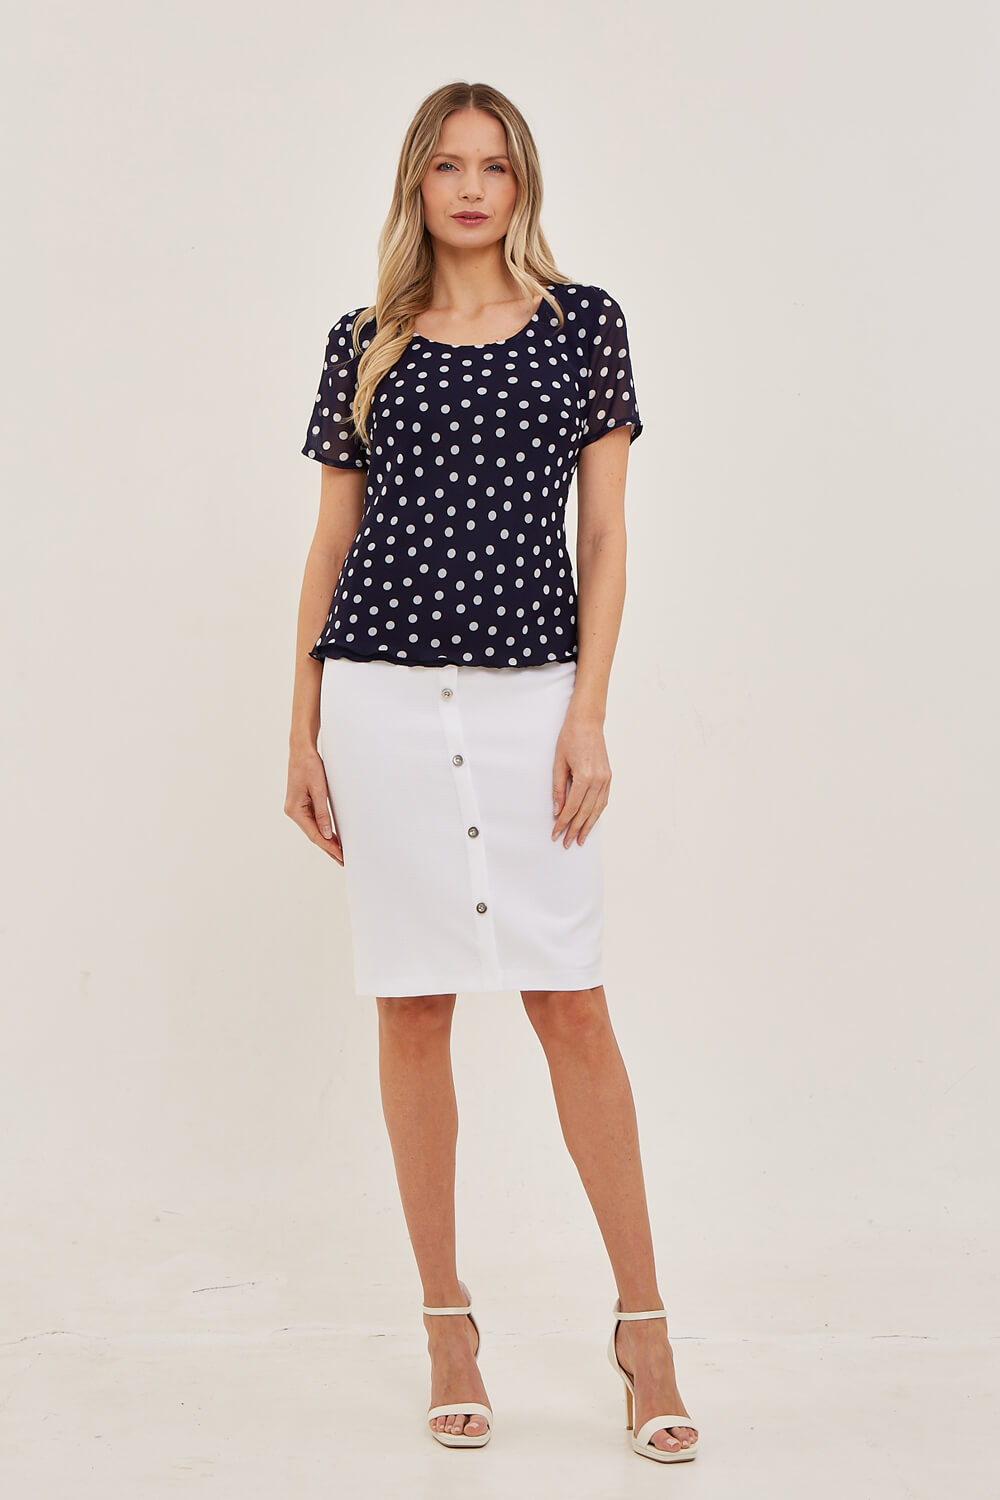 White Julianna Knee Length Button Skirt, Image 4 of 4